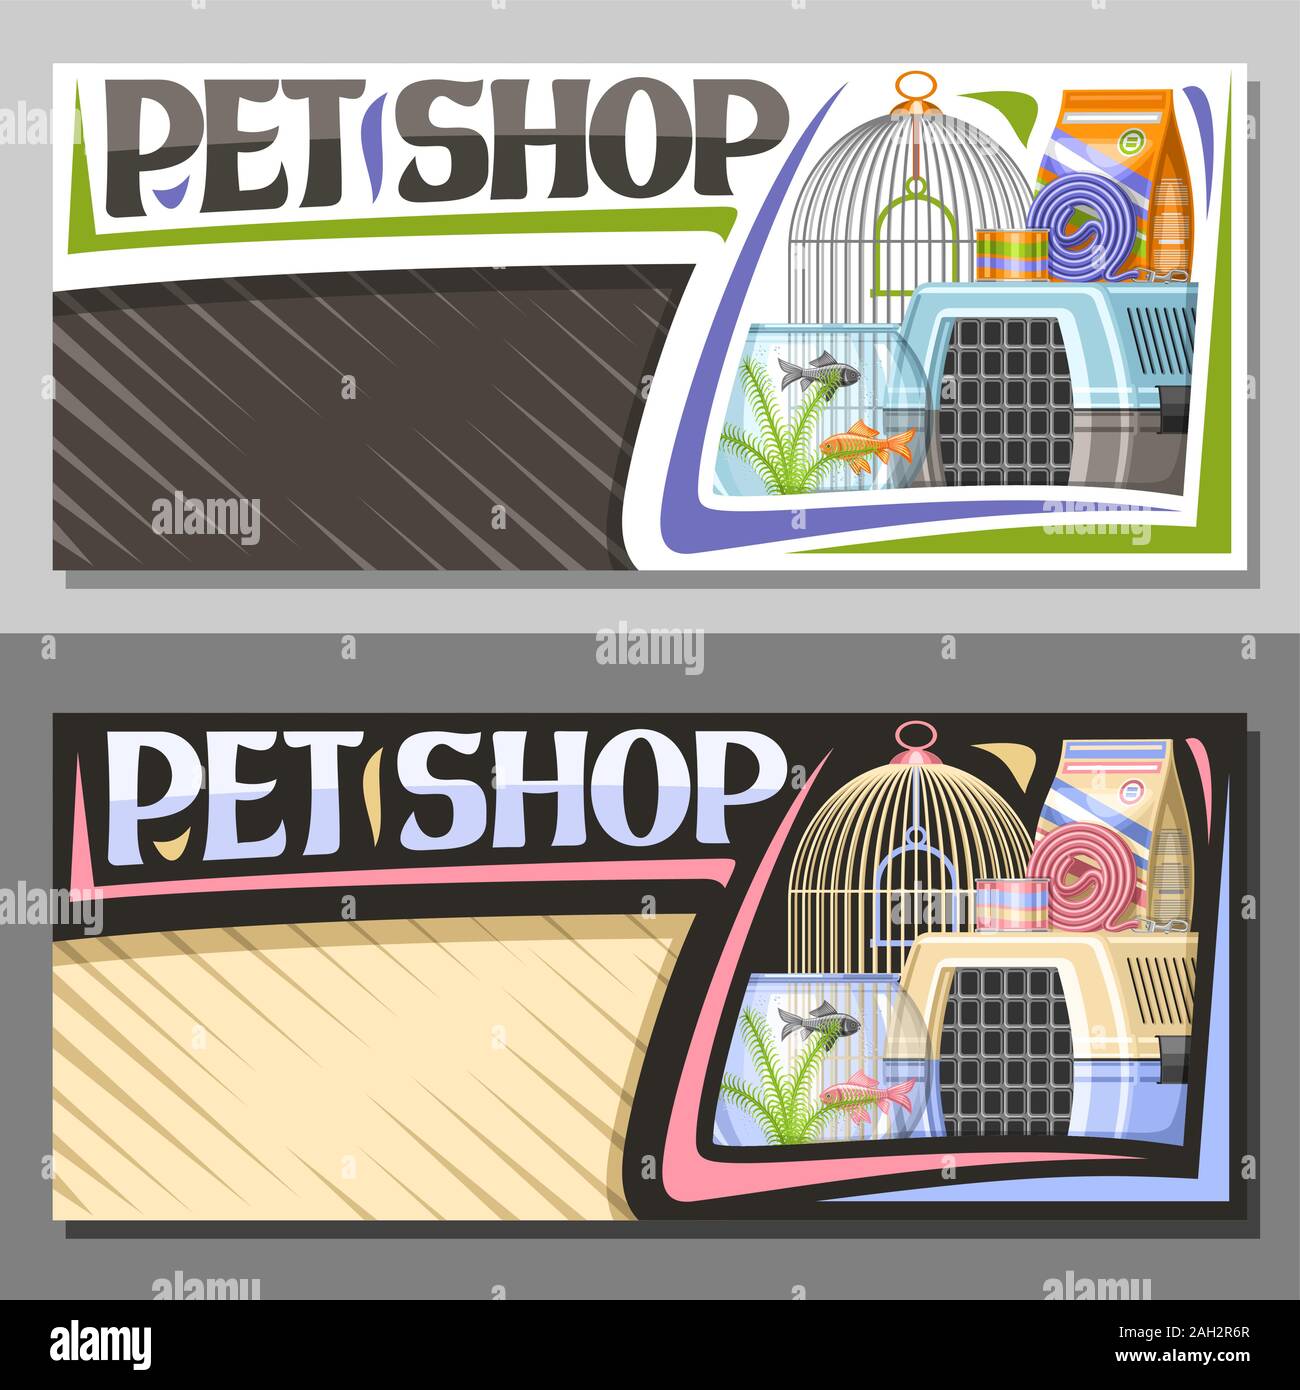 La mise en page pour vecteur Pet Shop avec copie espace, panneau avec illustration de boîte de voyage en plastique pour chat et aquarium avec poissons rouges dans l'eau et l'ondulé Illustration de Vecteur